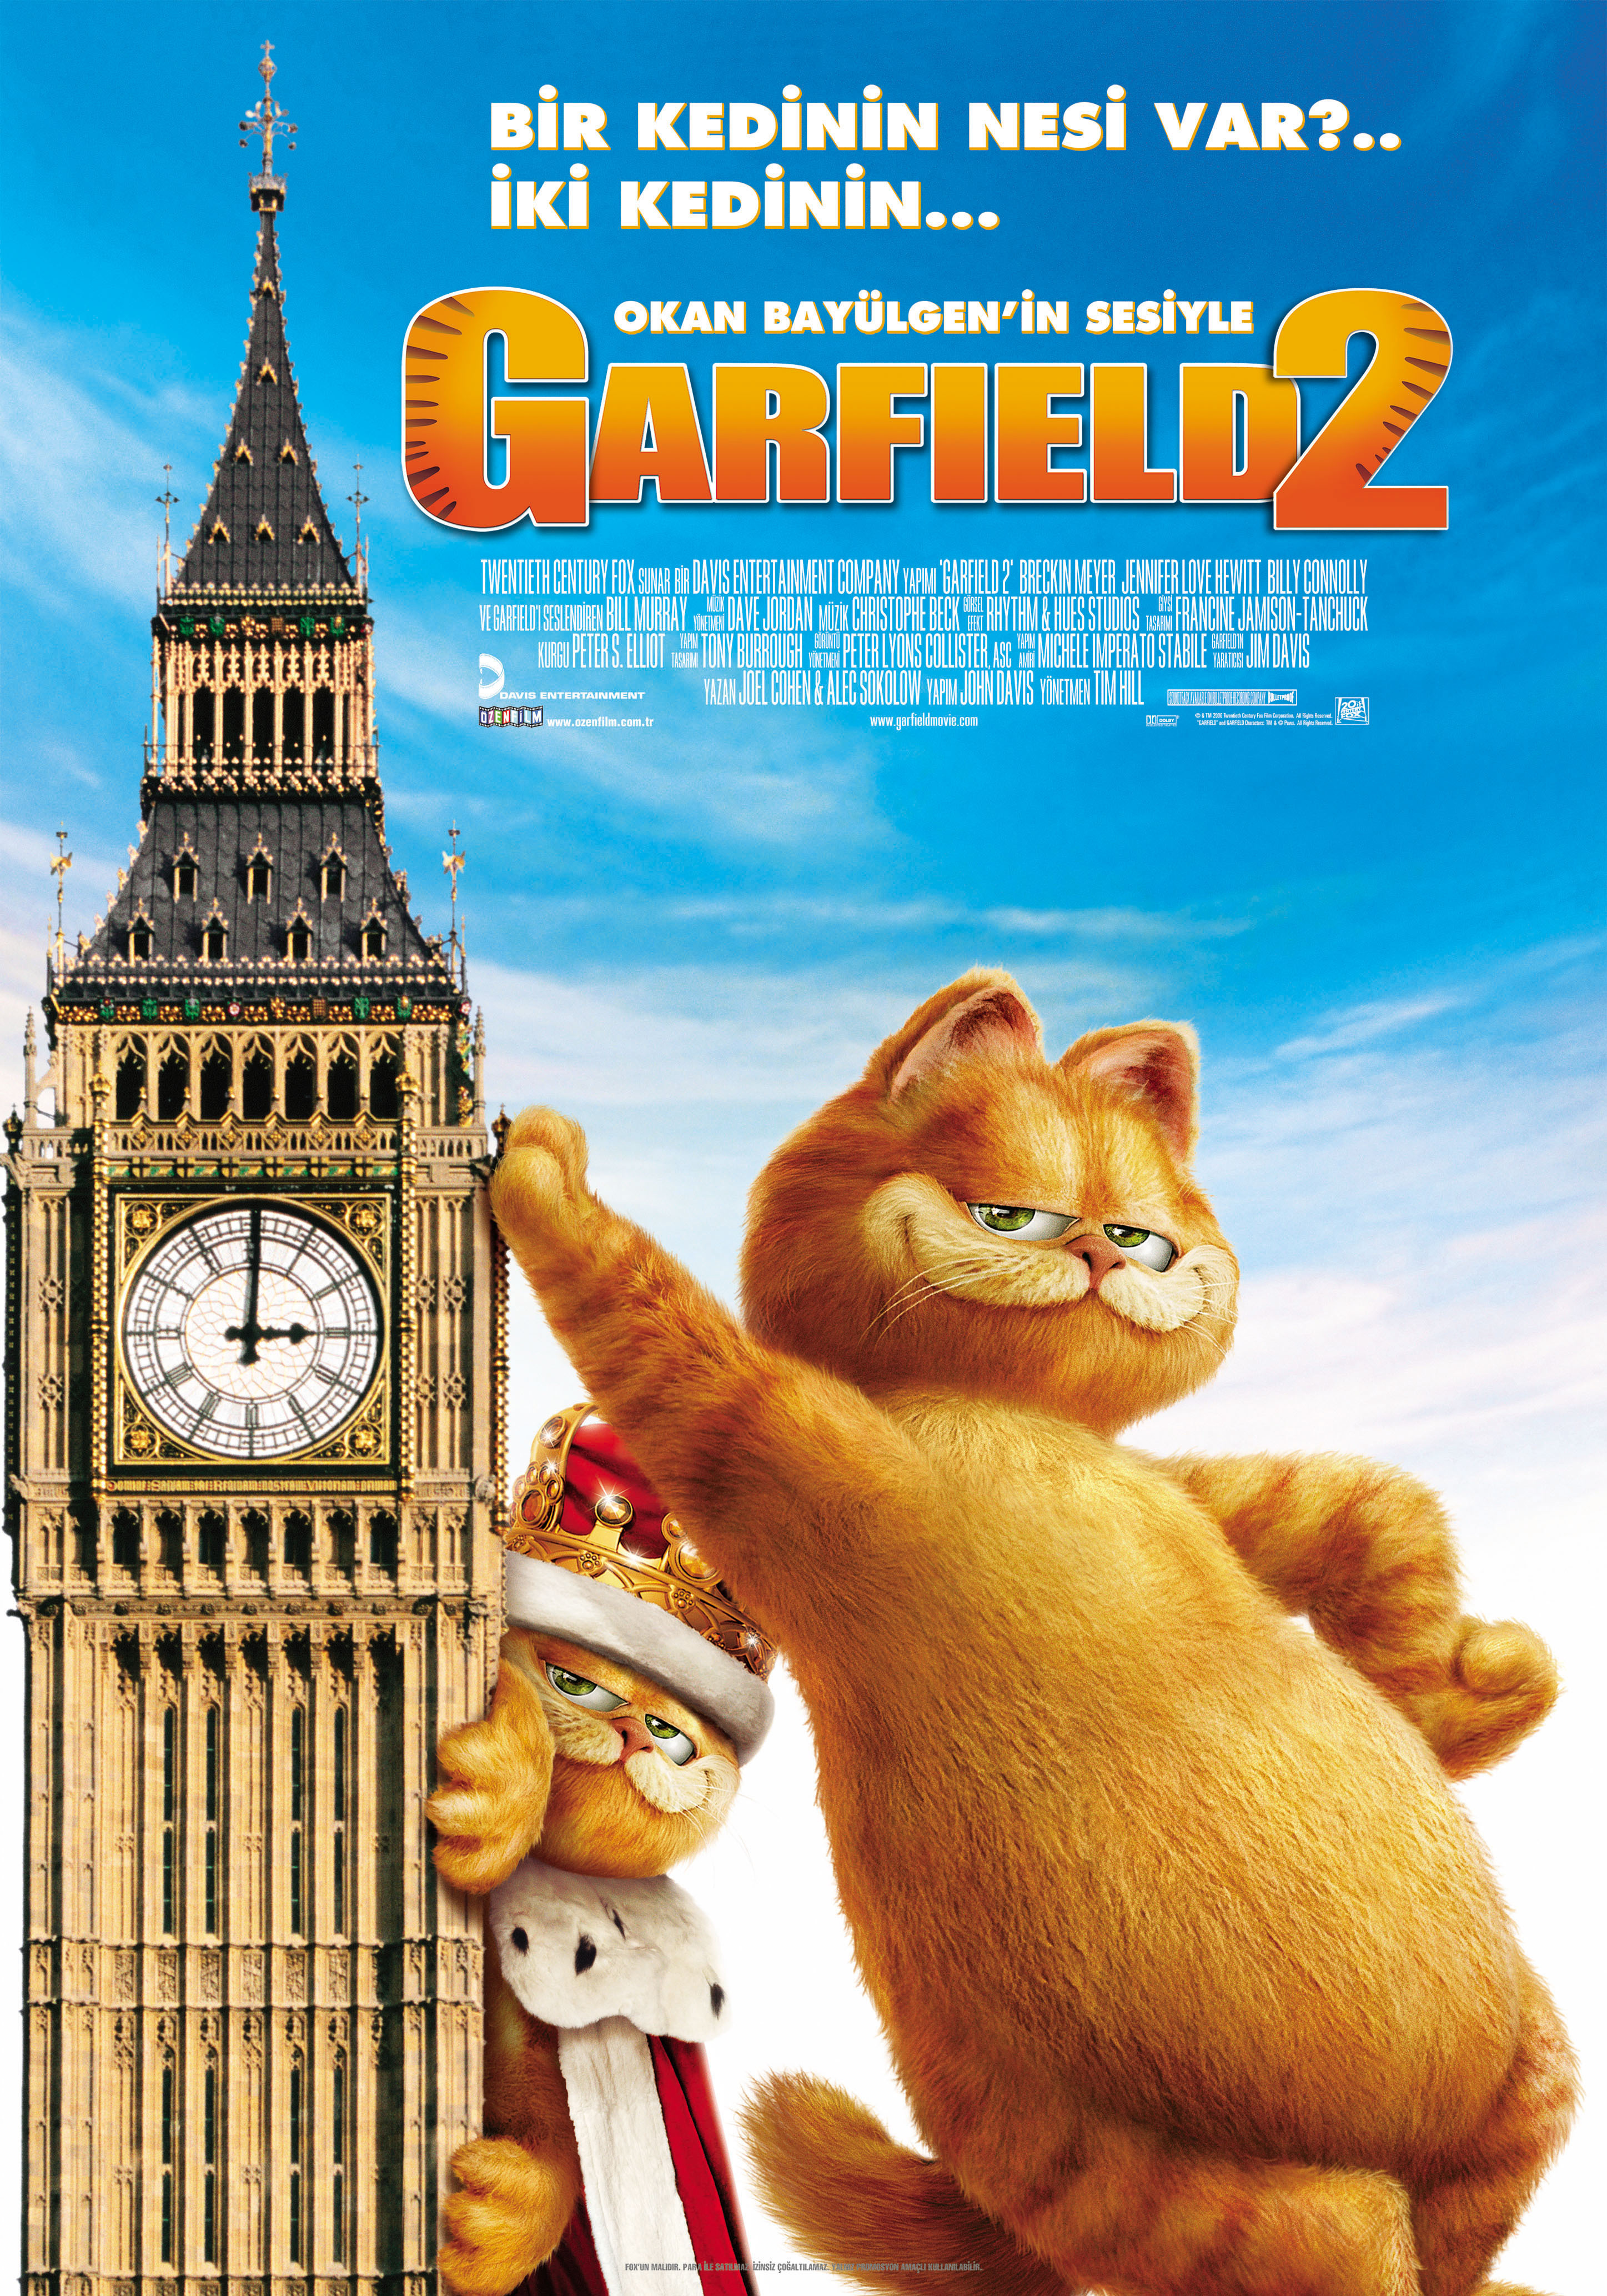 《加菲猫》将推出新动画剧集 大肥喵10年后再回归 - 哔哩哔哩